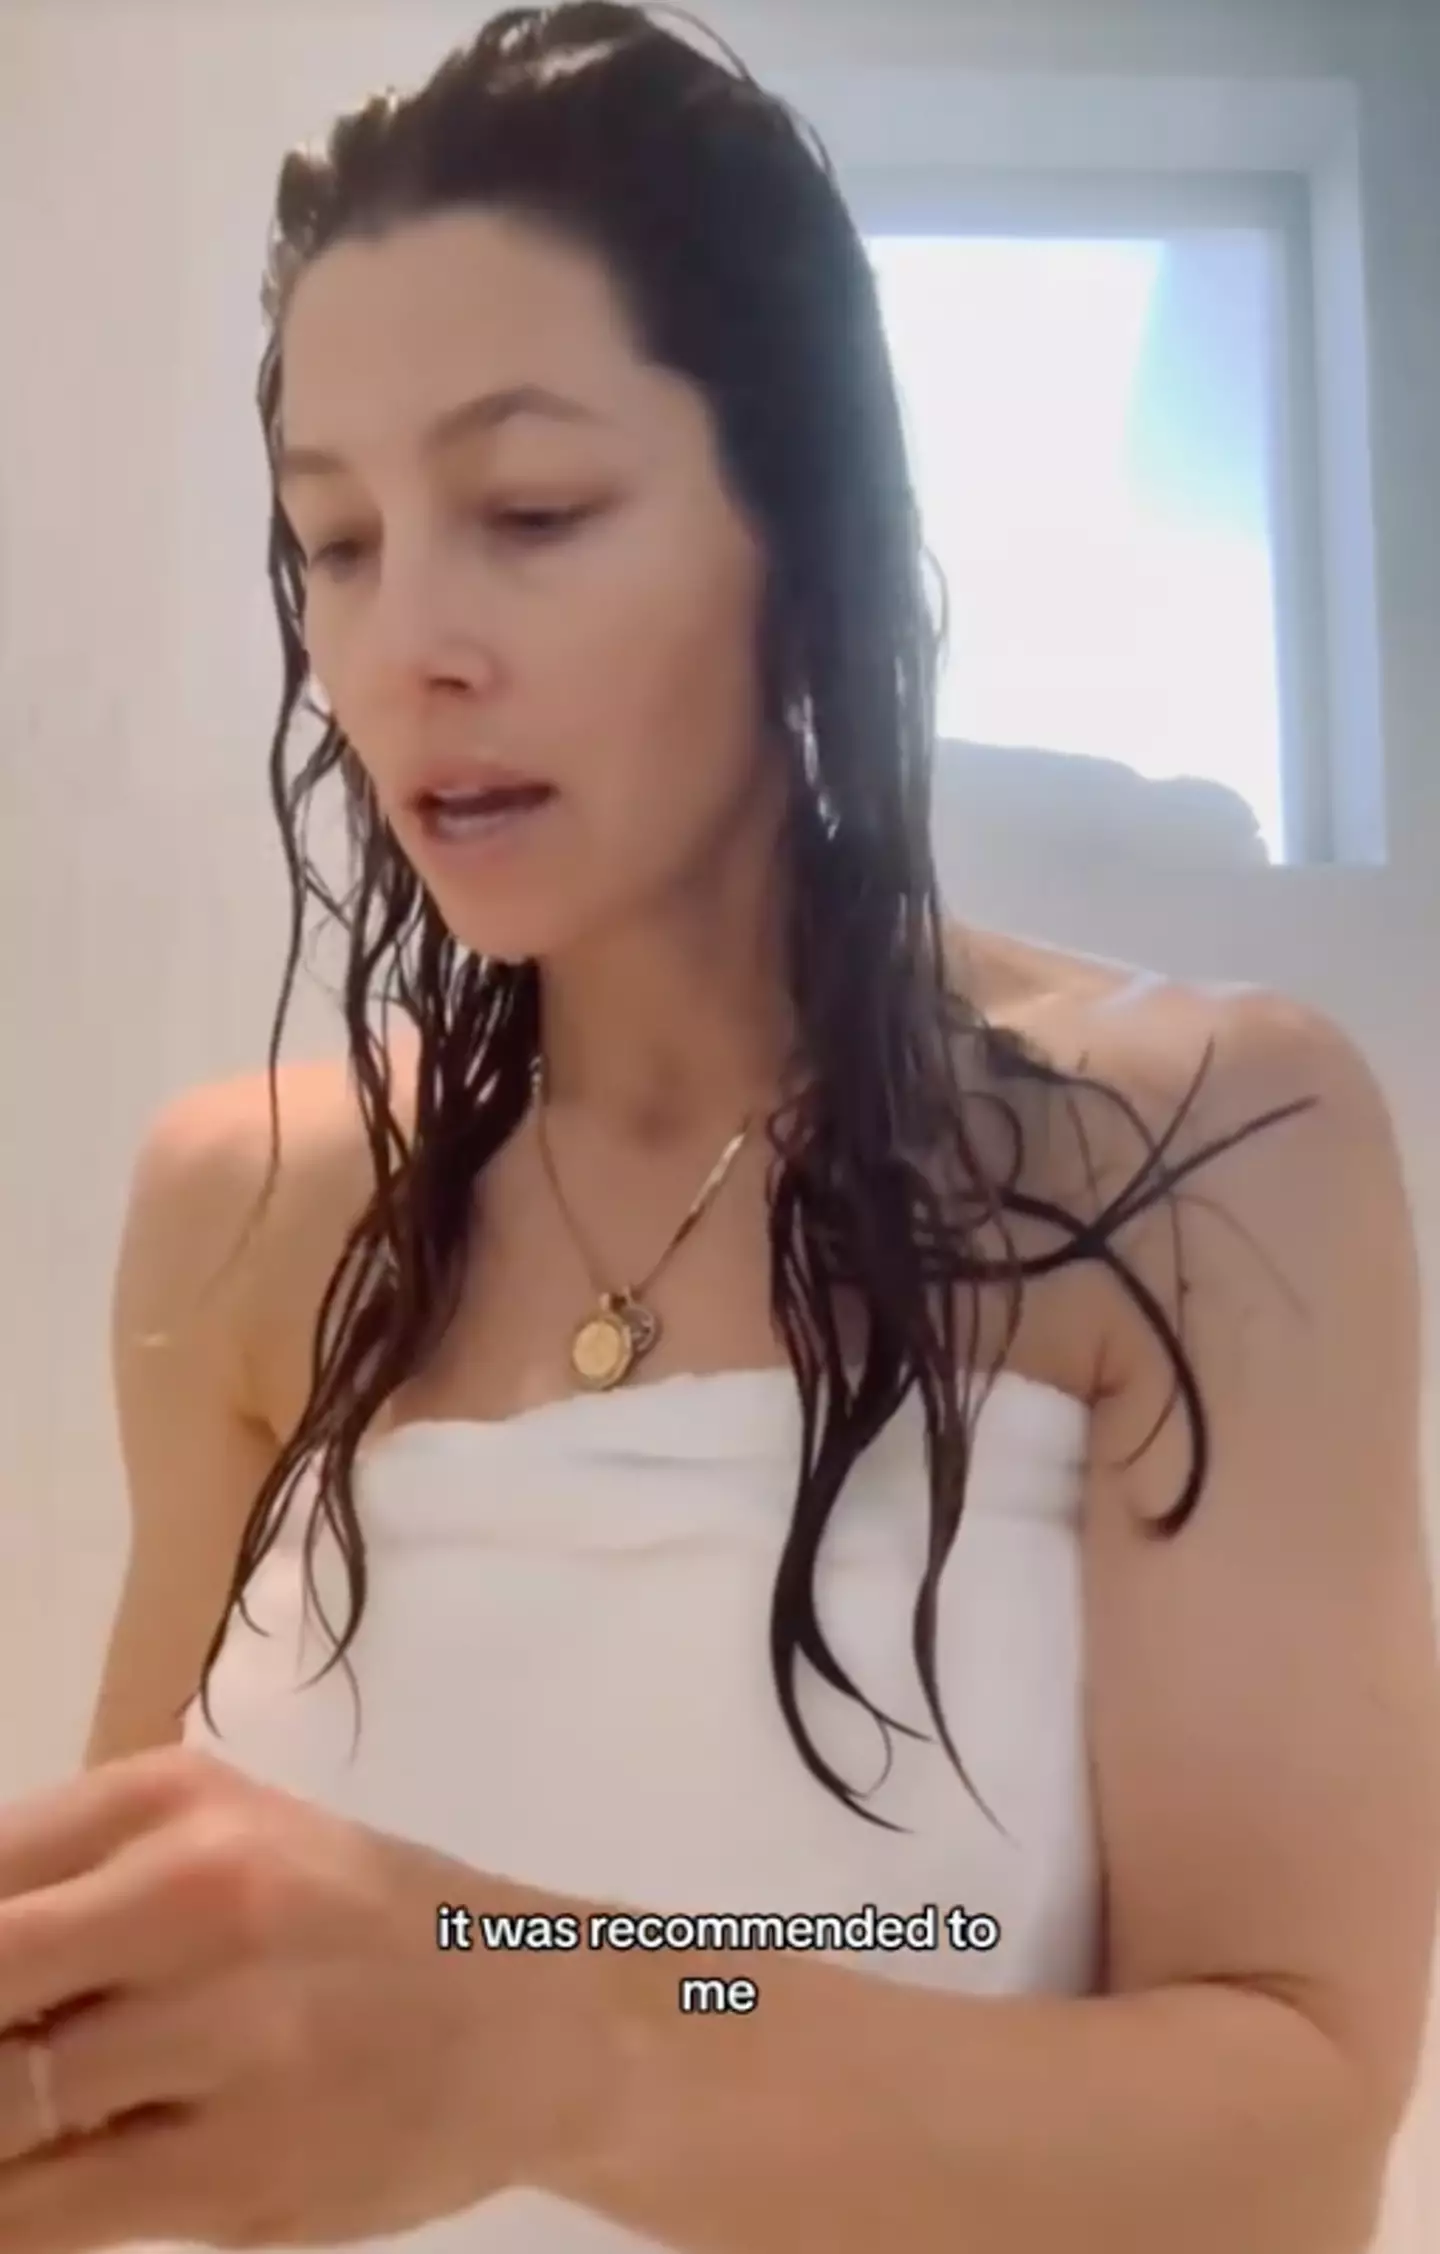 Jessica Beil has a weird shower habit.